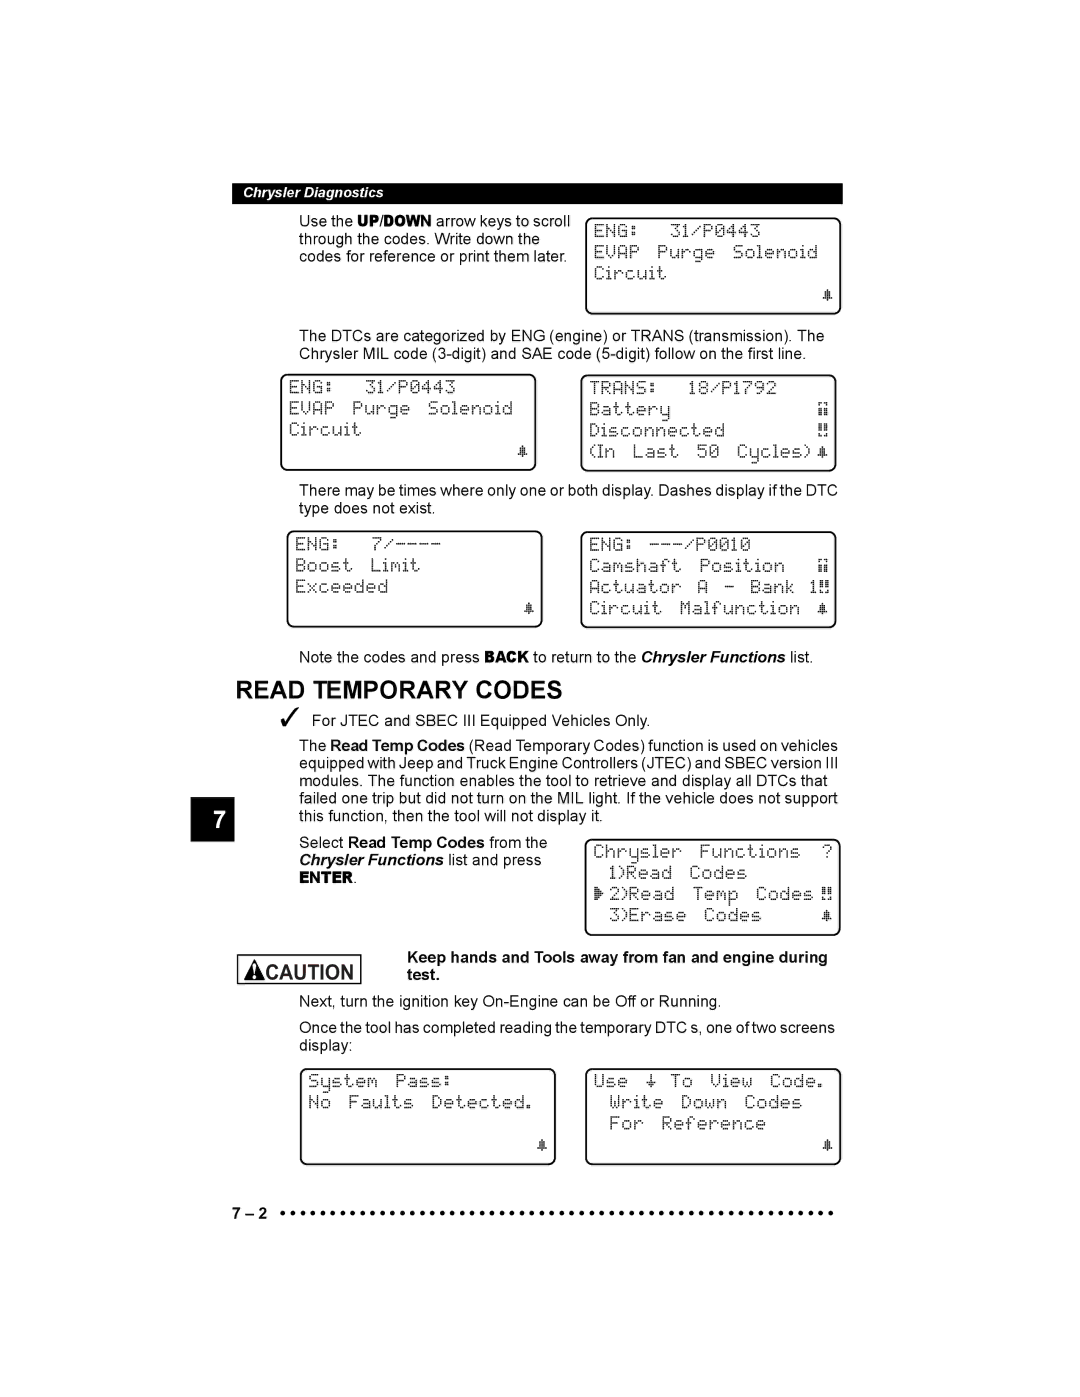 Actron 9640 user manual Read Temporary Codes, Eng, Trans, Evap 